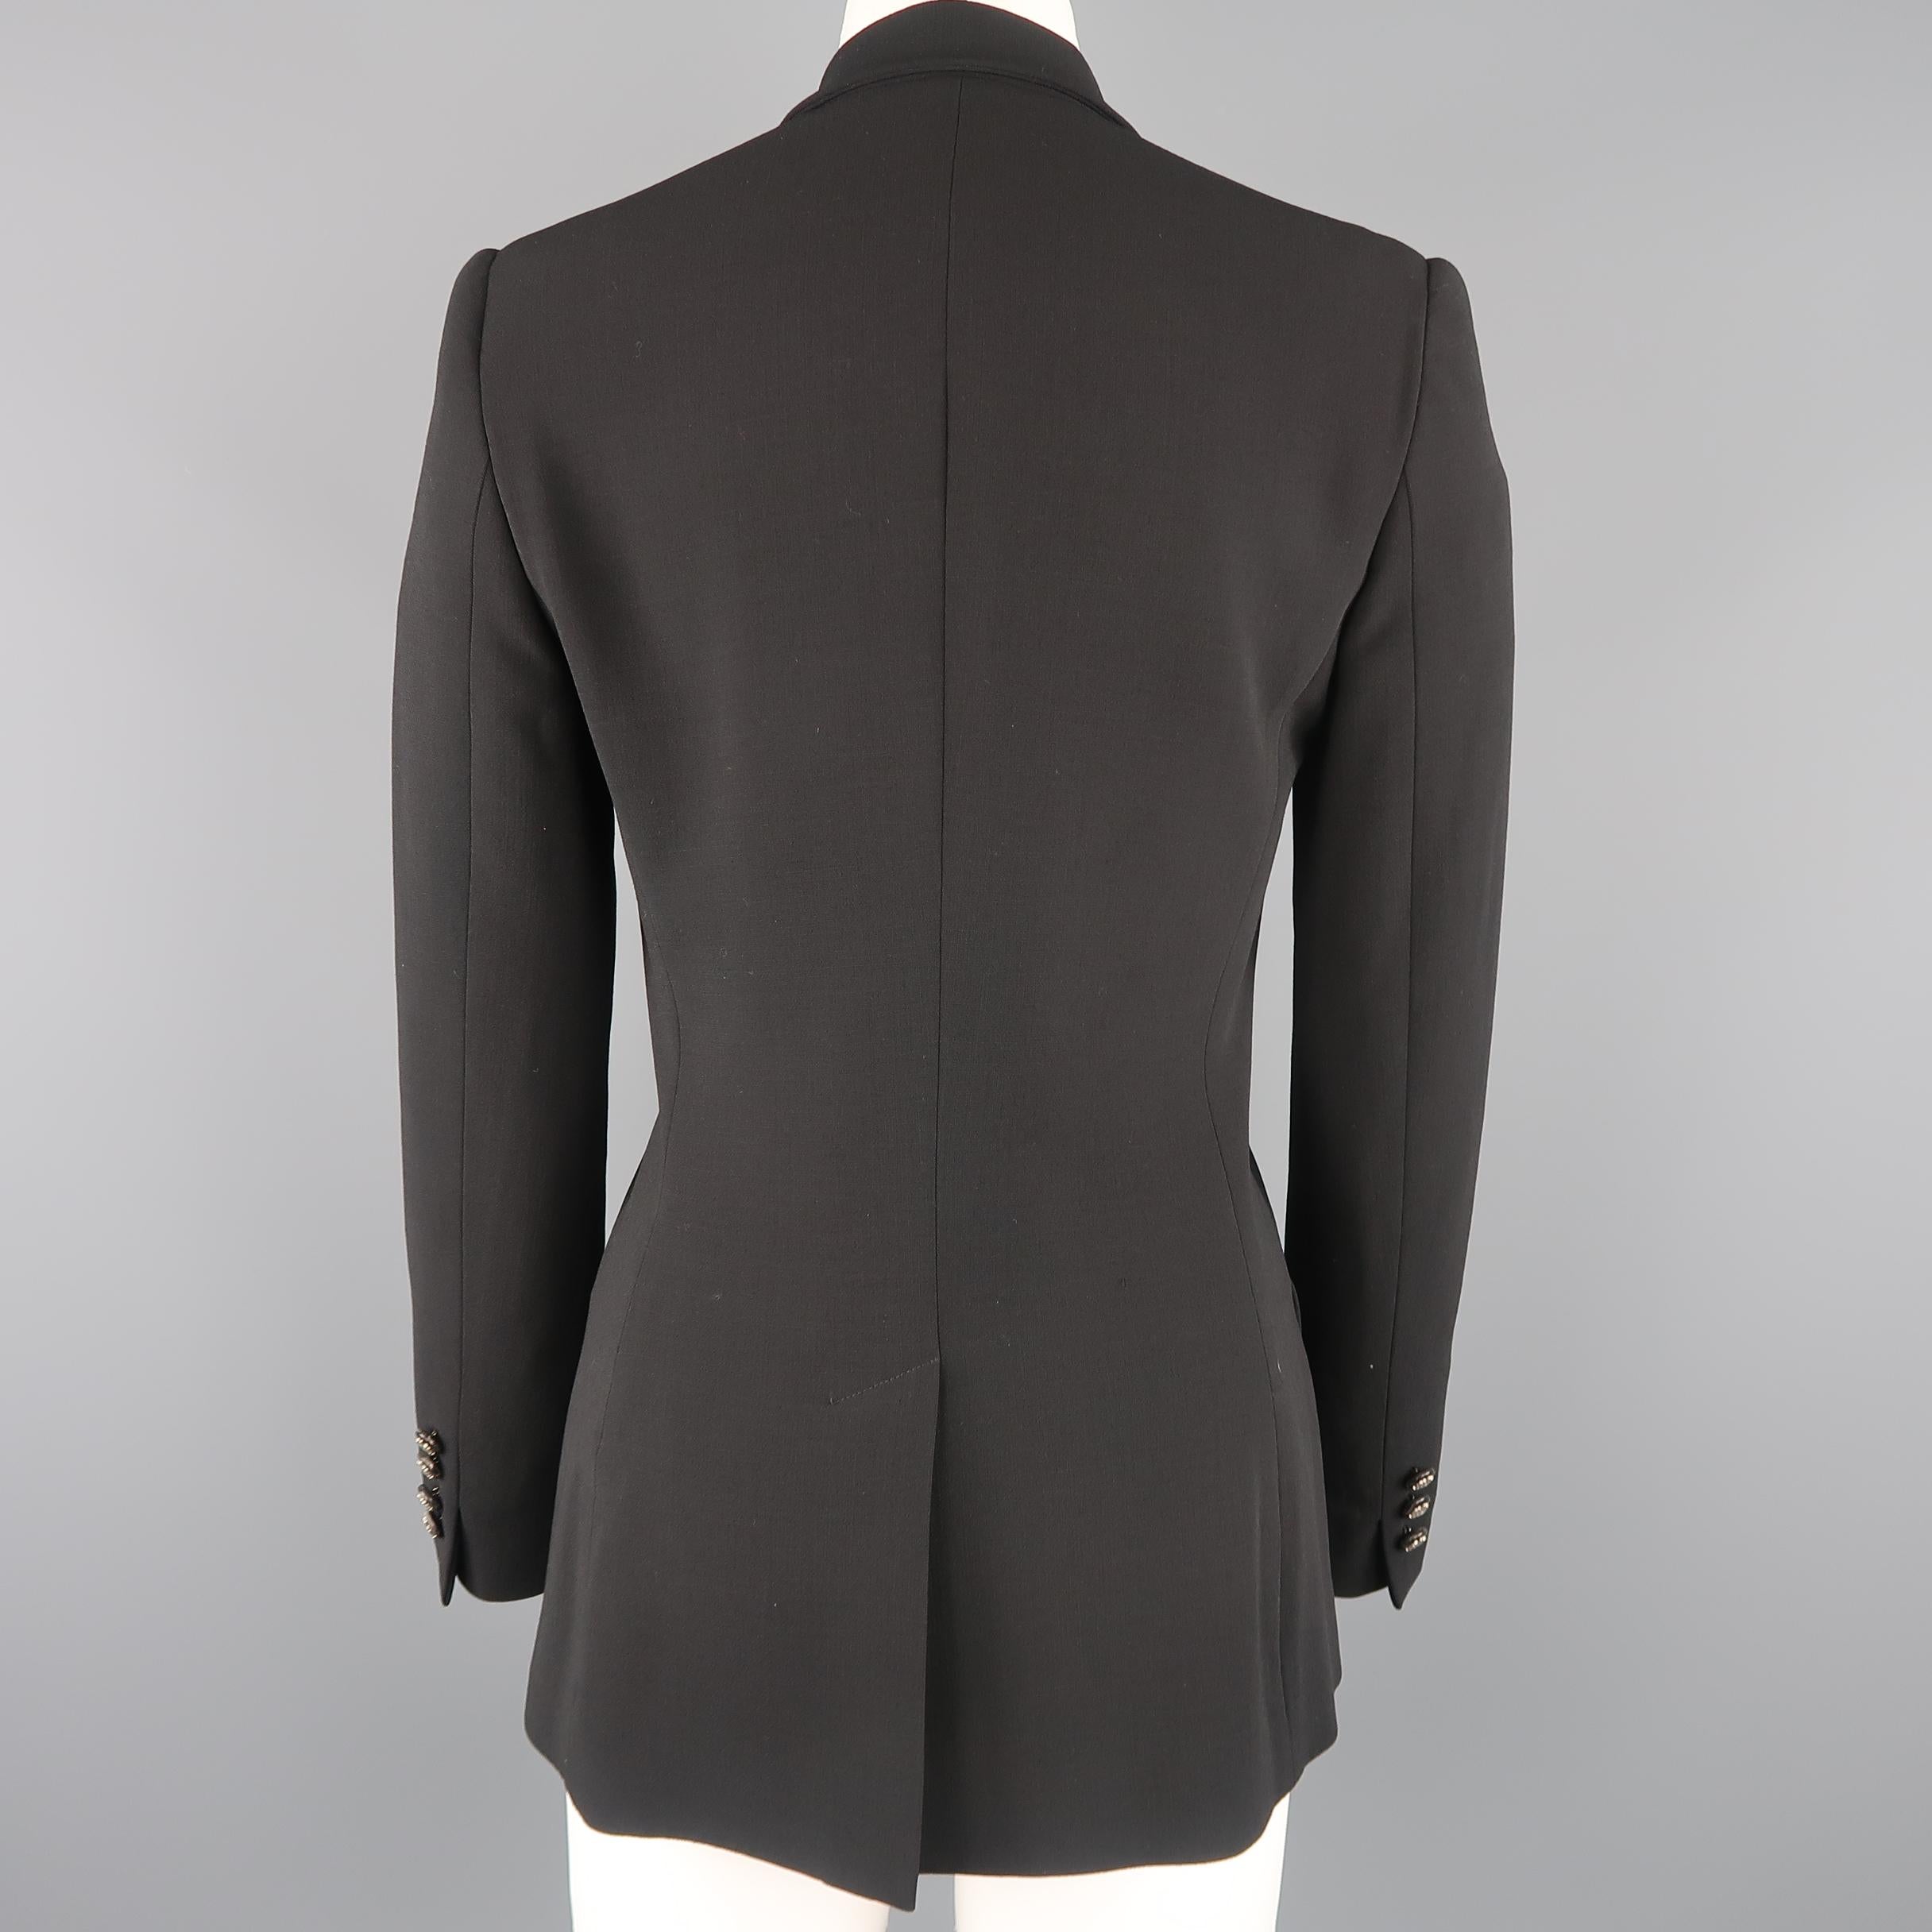 Women's RALPH LAUREN Size 6 Black Equestrian Sport Coat Jacket